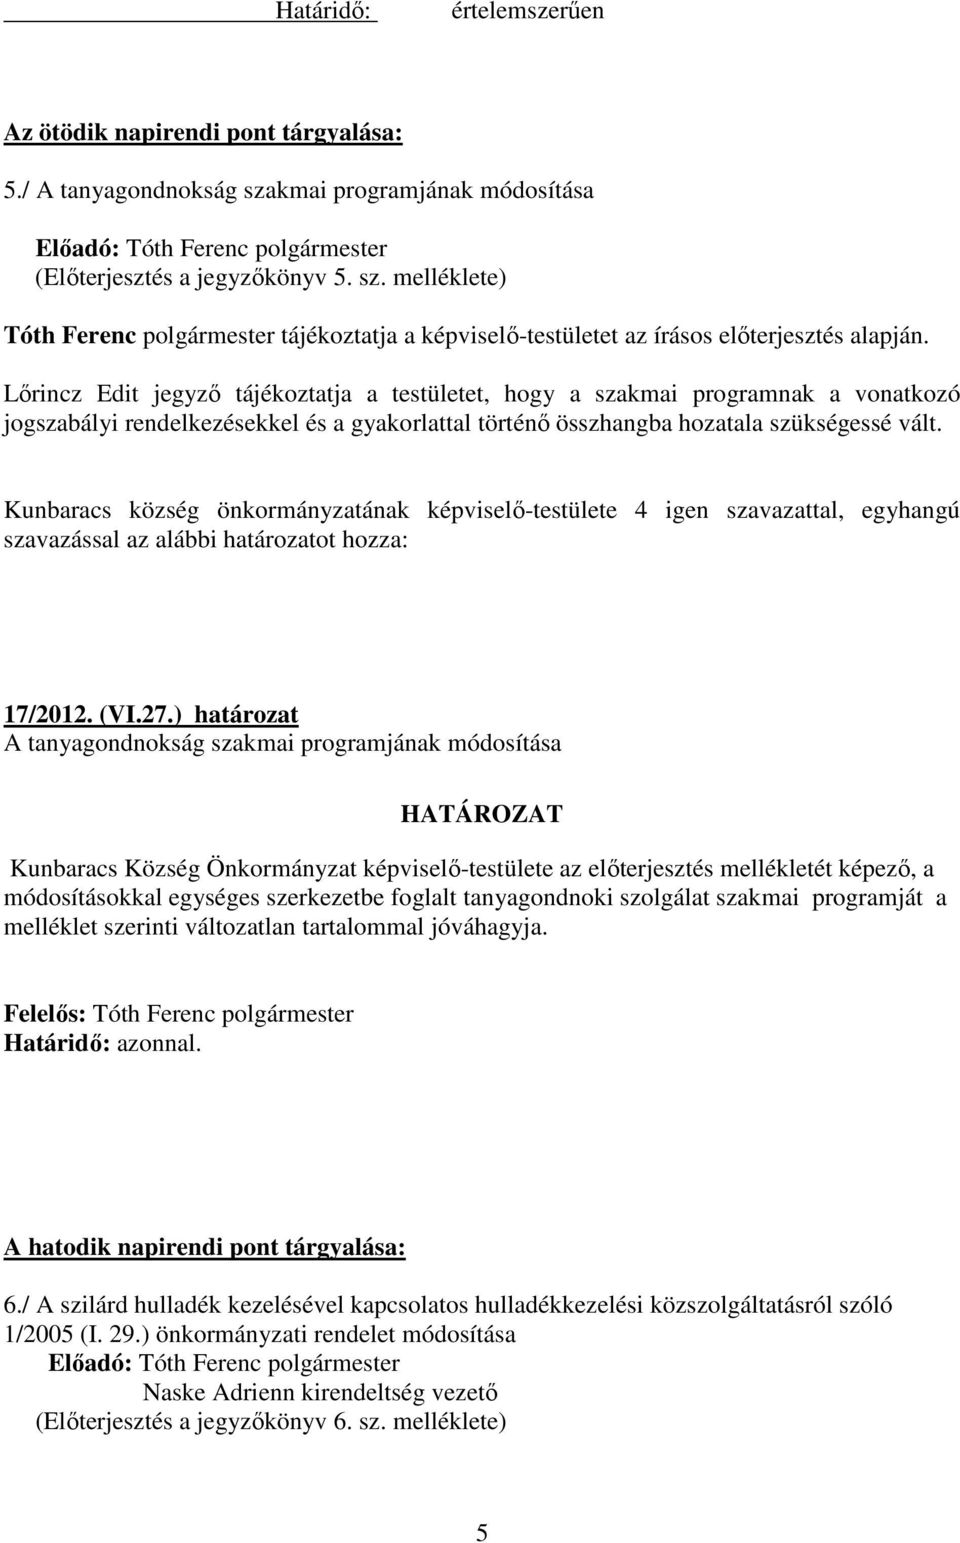 melléklete) Lırincz Edit jegyzı tájékoztatja a testületet, hogy a szakmai programnak a vonatkozó jogszabályi rendelkezésekkel és a gyakorlattal történı összhangba hozatala szükségessé vált. 17/2012.